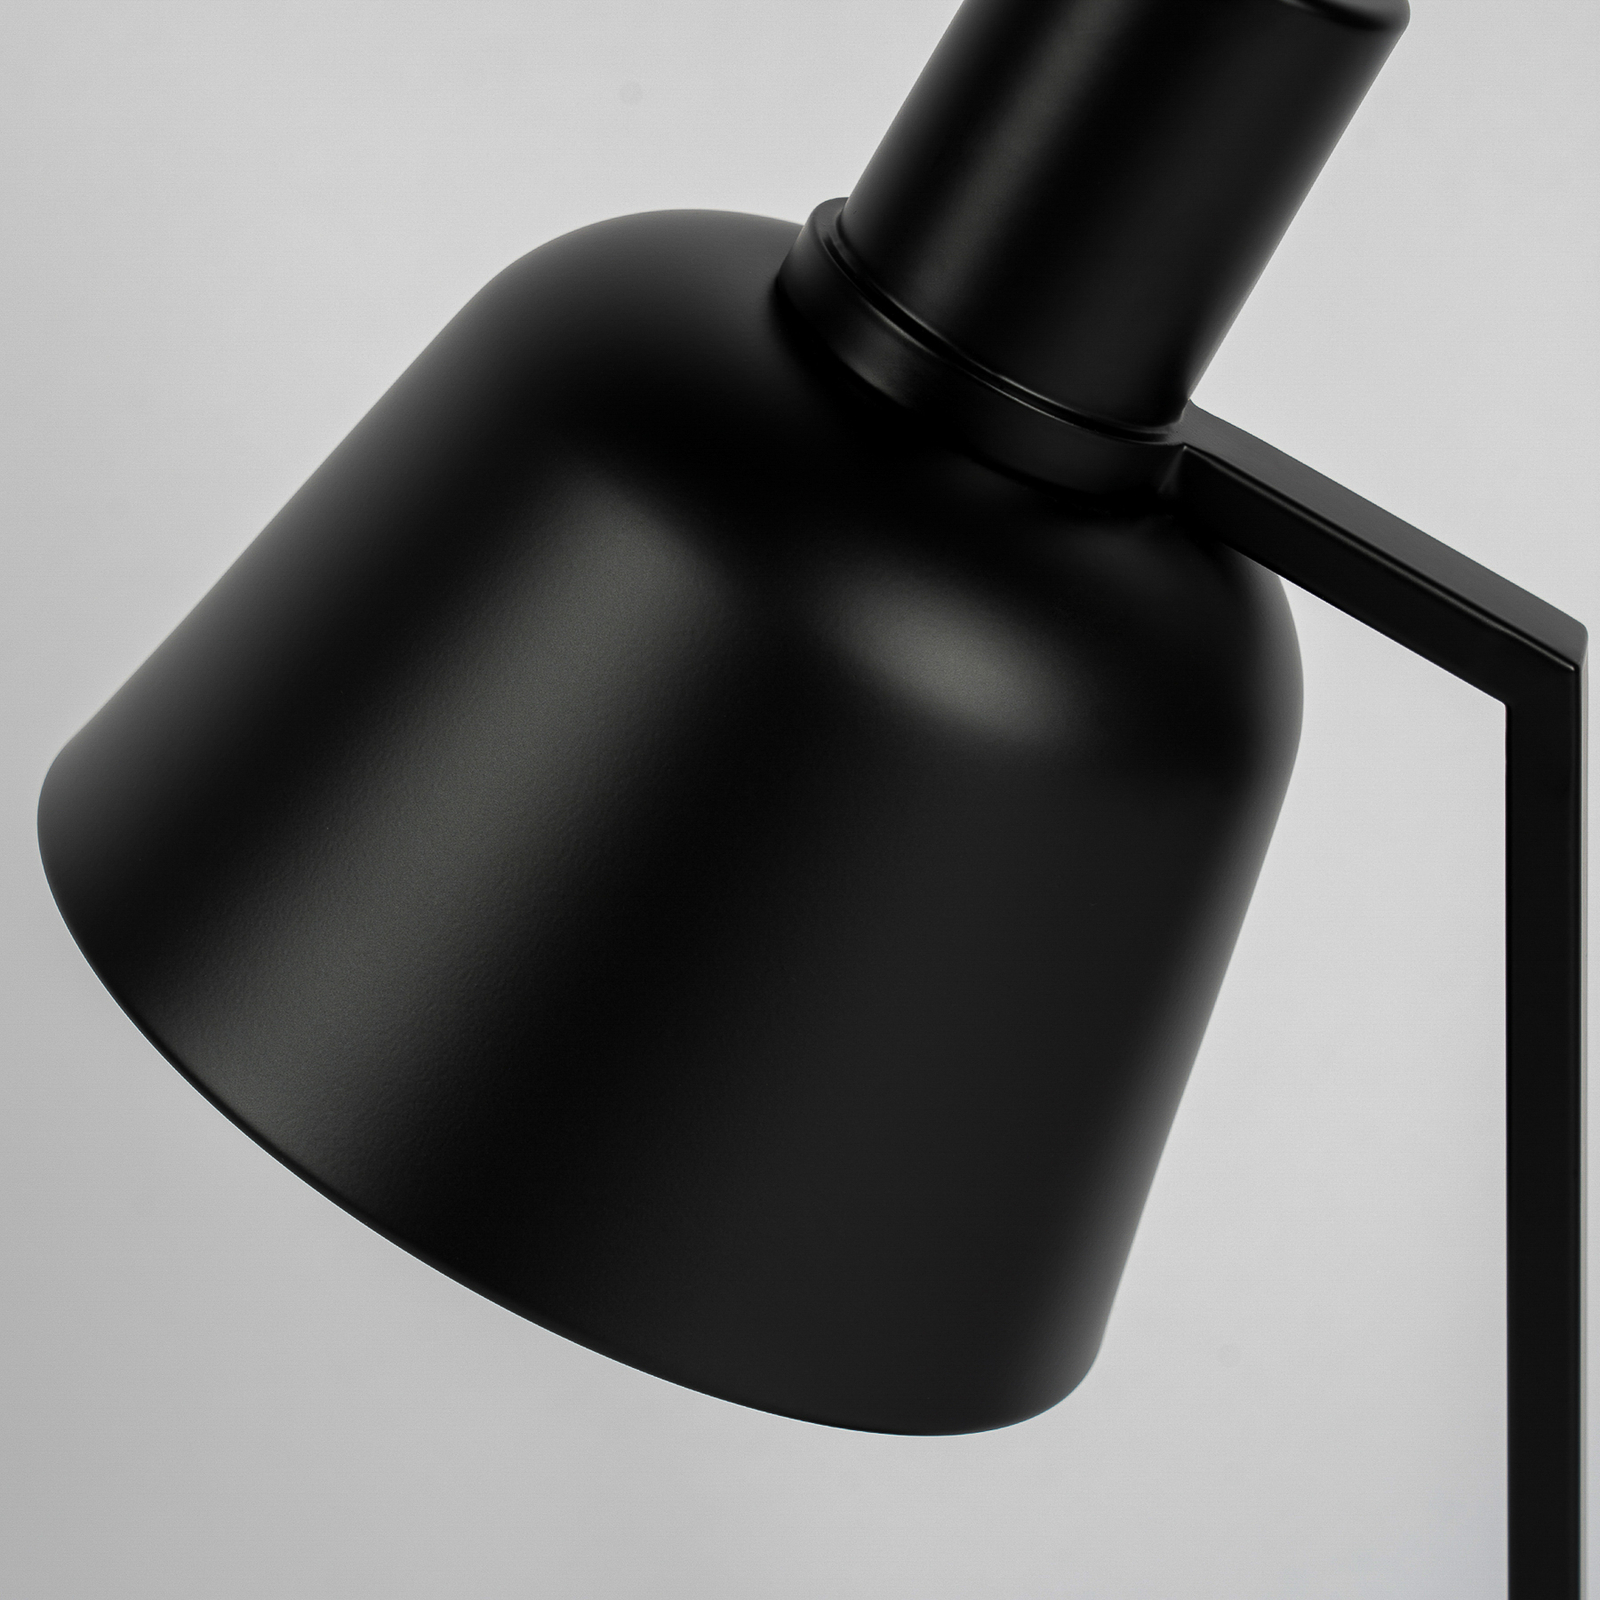 Lucande Servan tafellamp van zwart ijzer